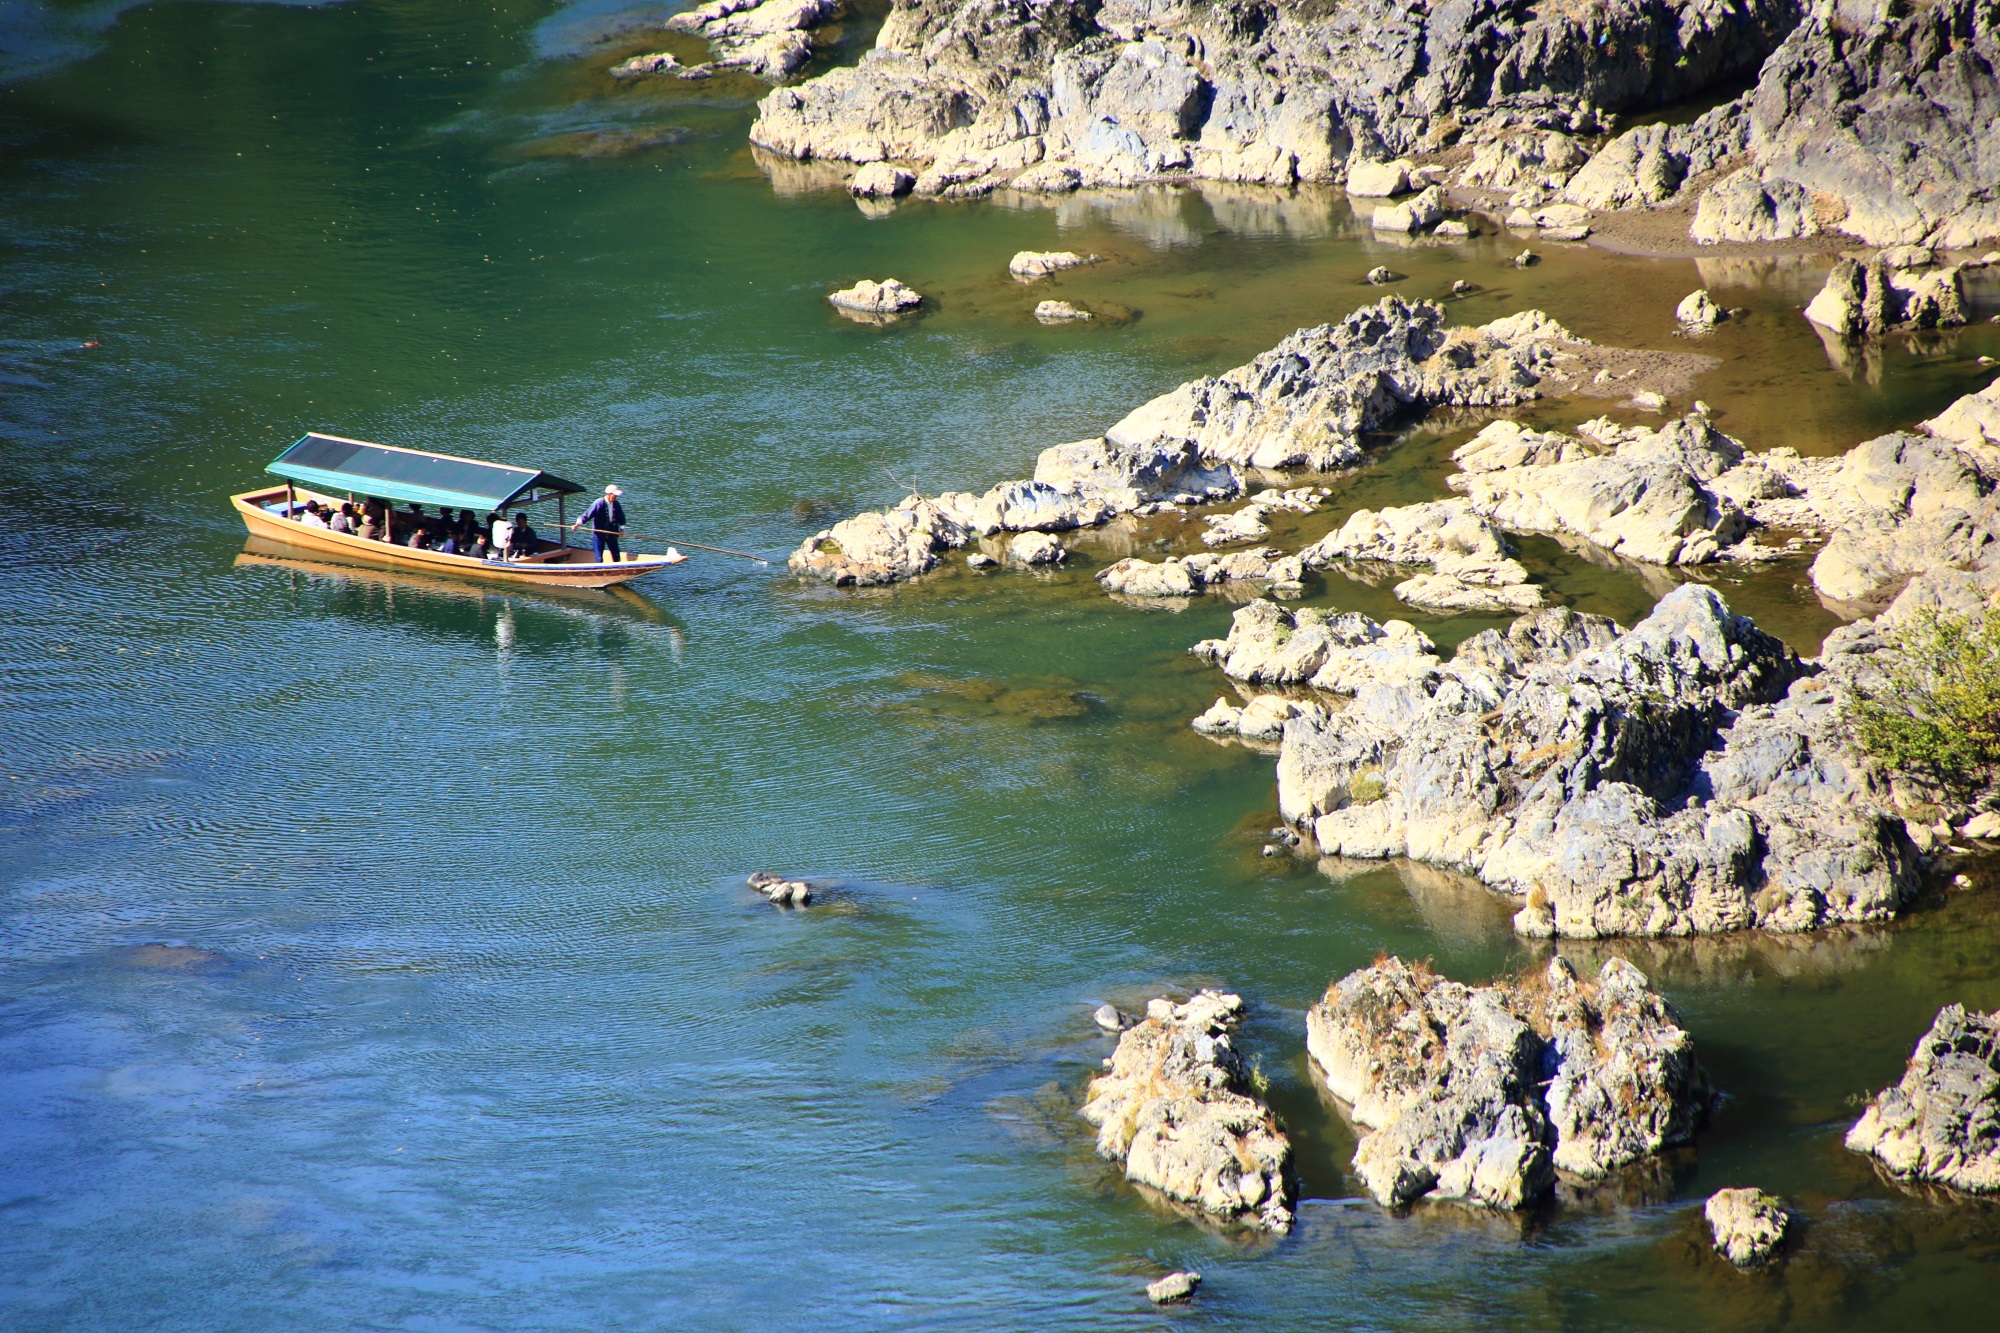 嵐山公園 亀山地区展望台から眺める保津川と舟